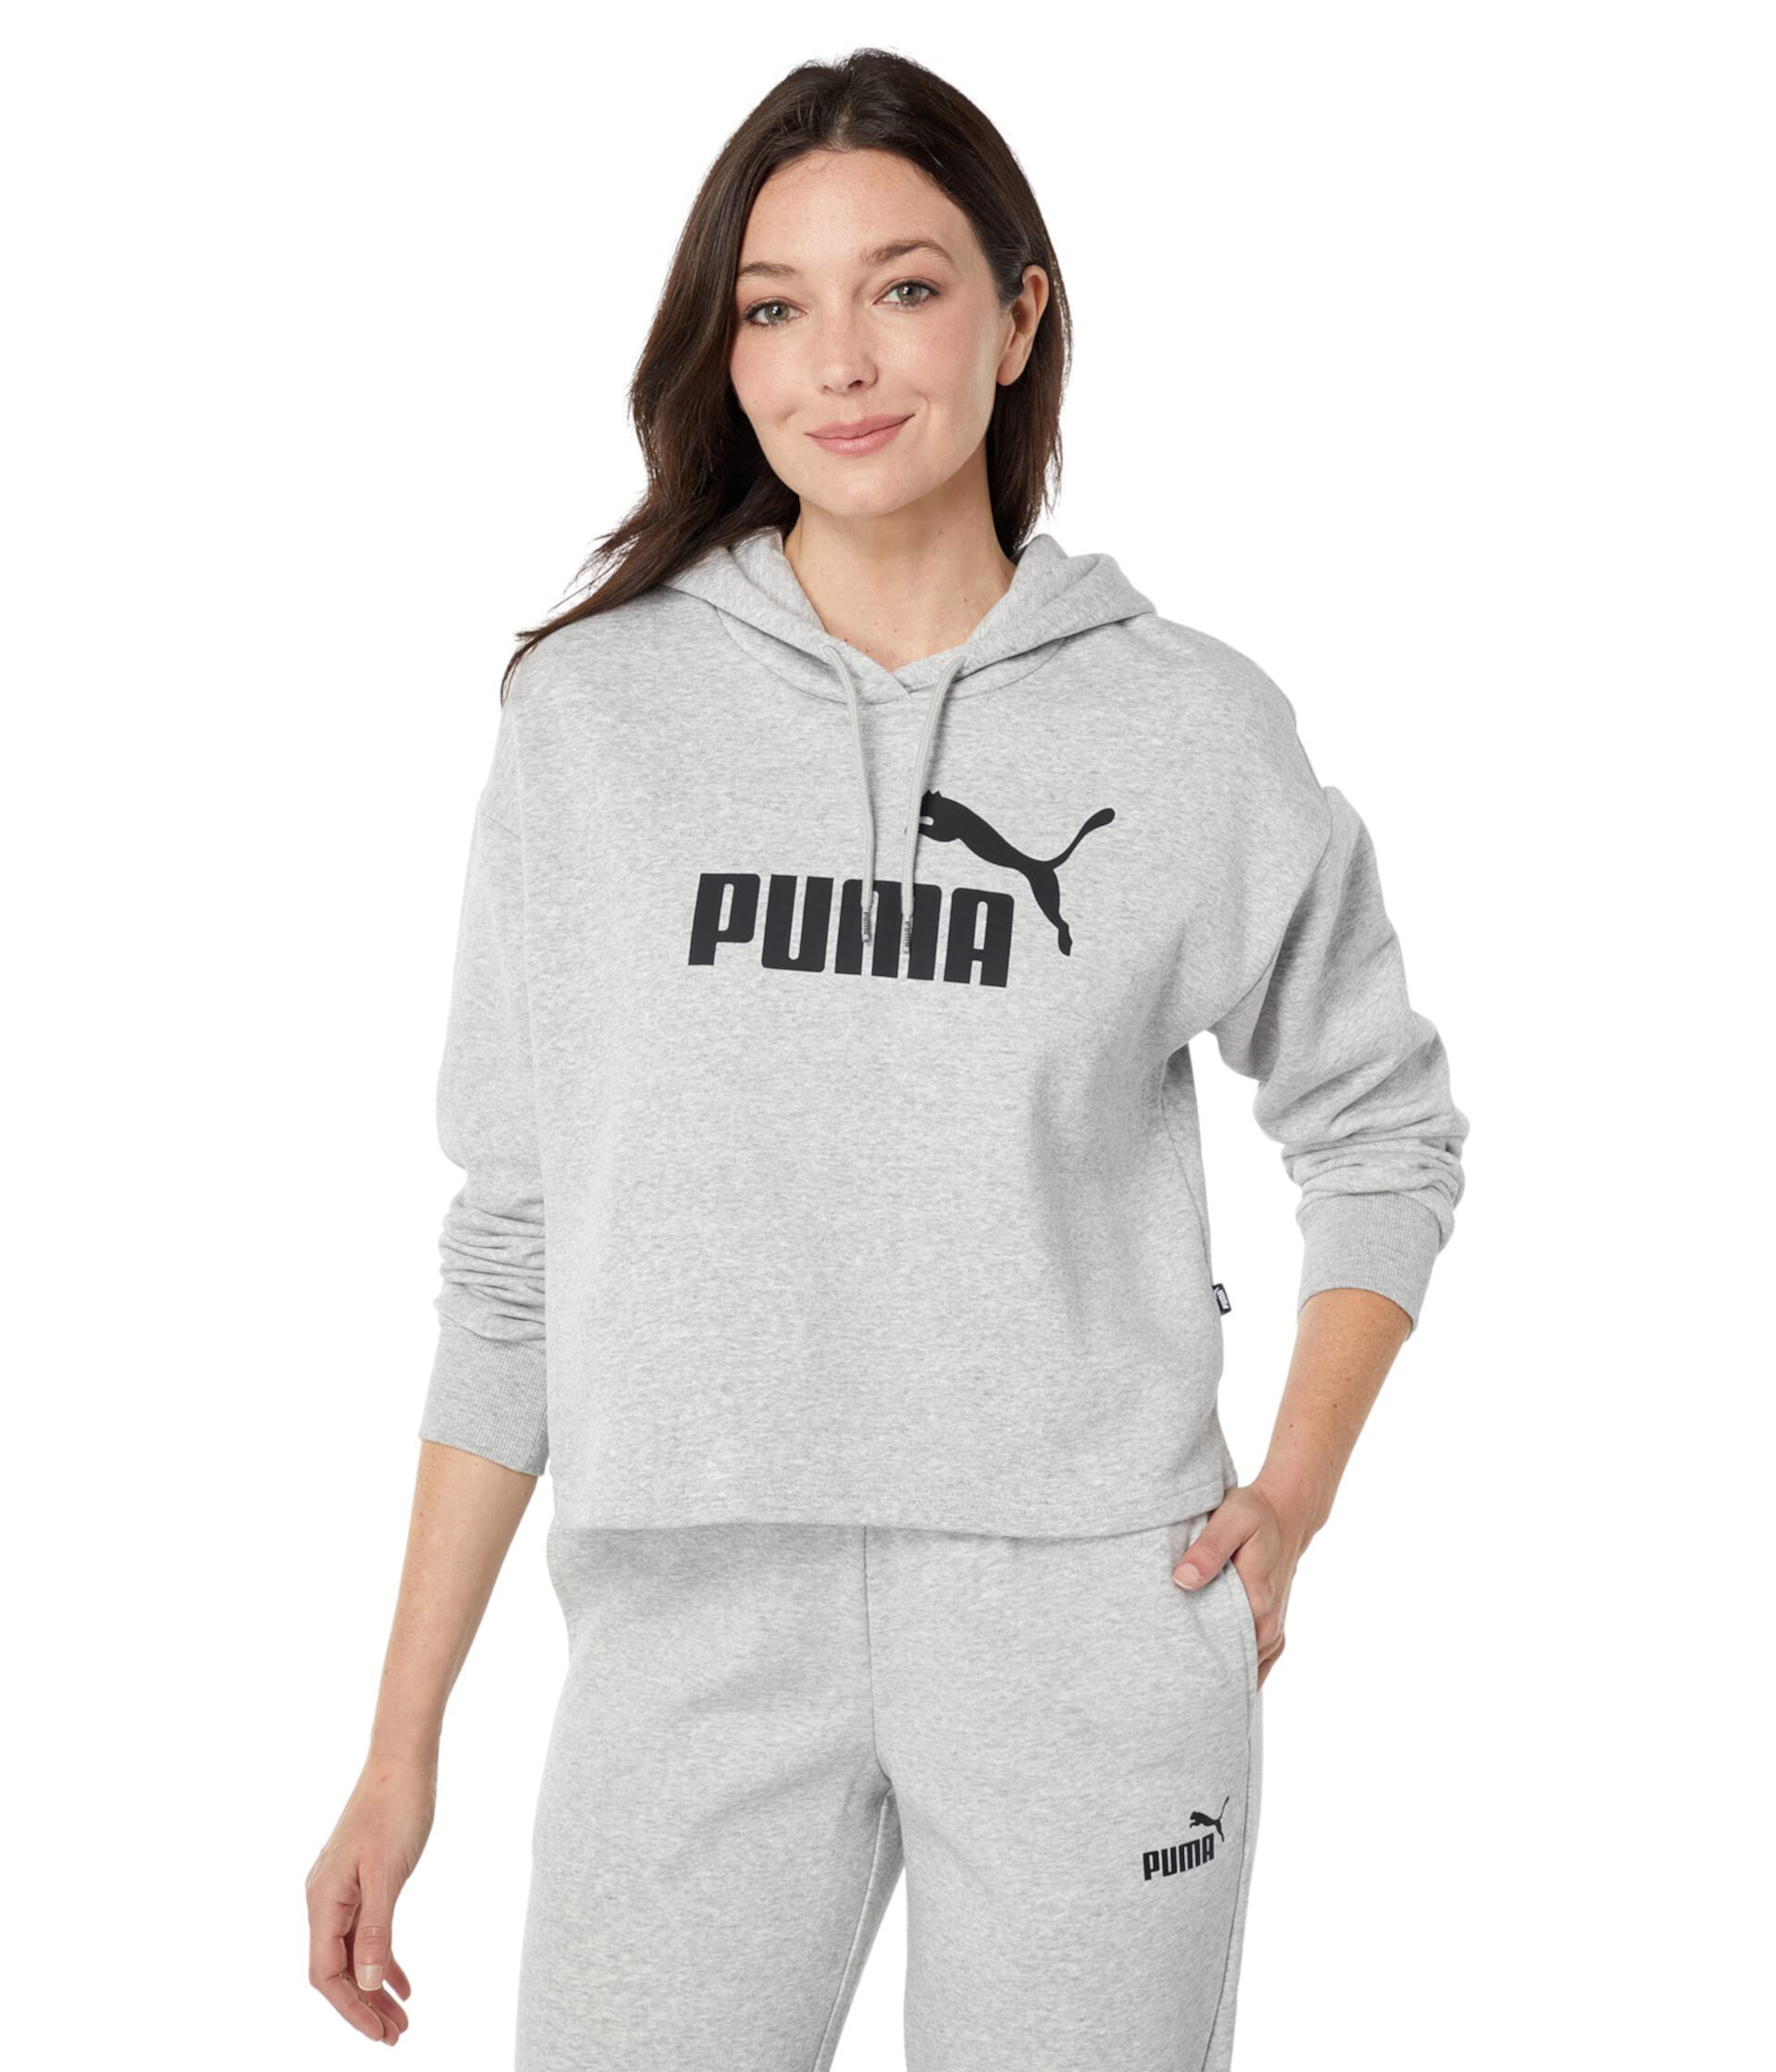 Укороченный флисовый худи с логотипом Essentials PUMA